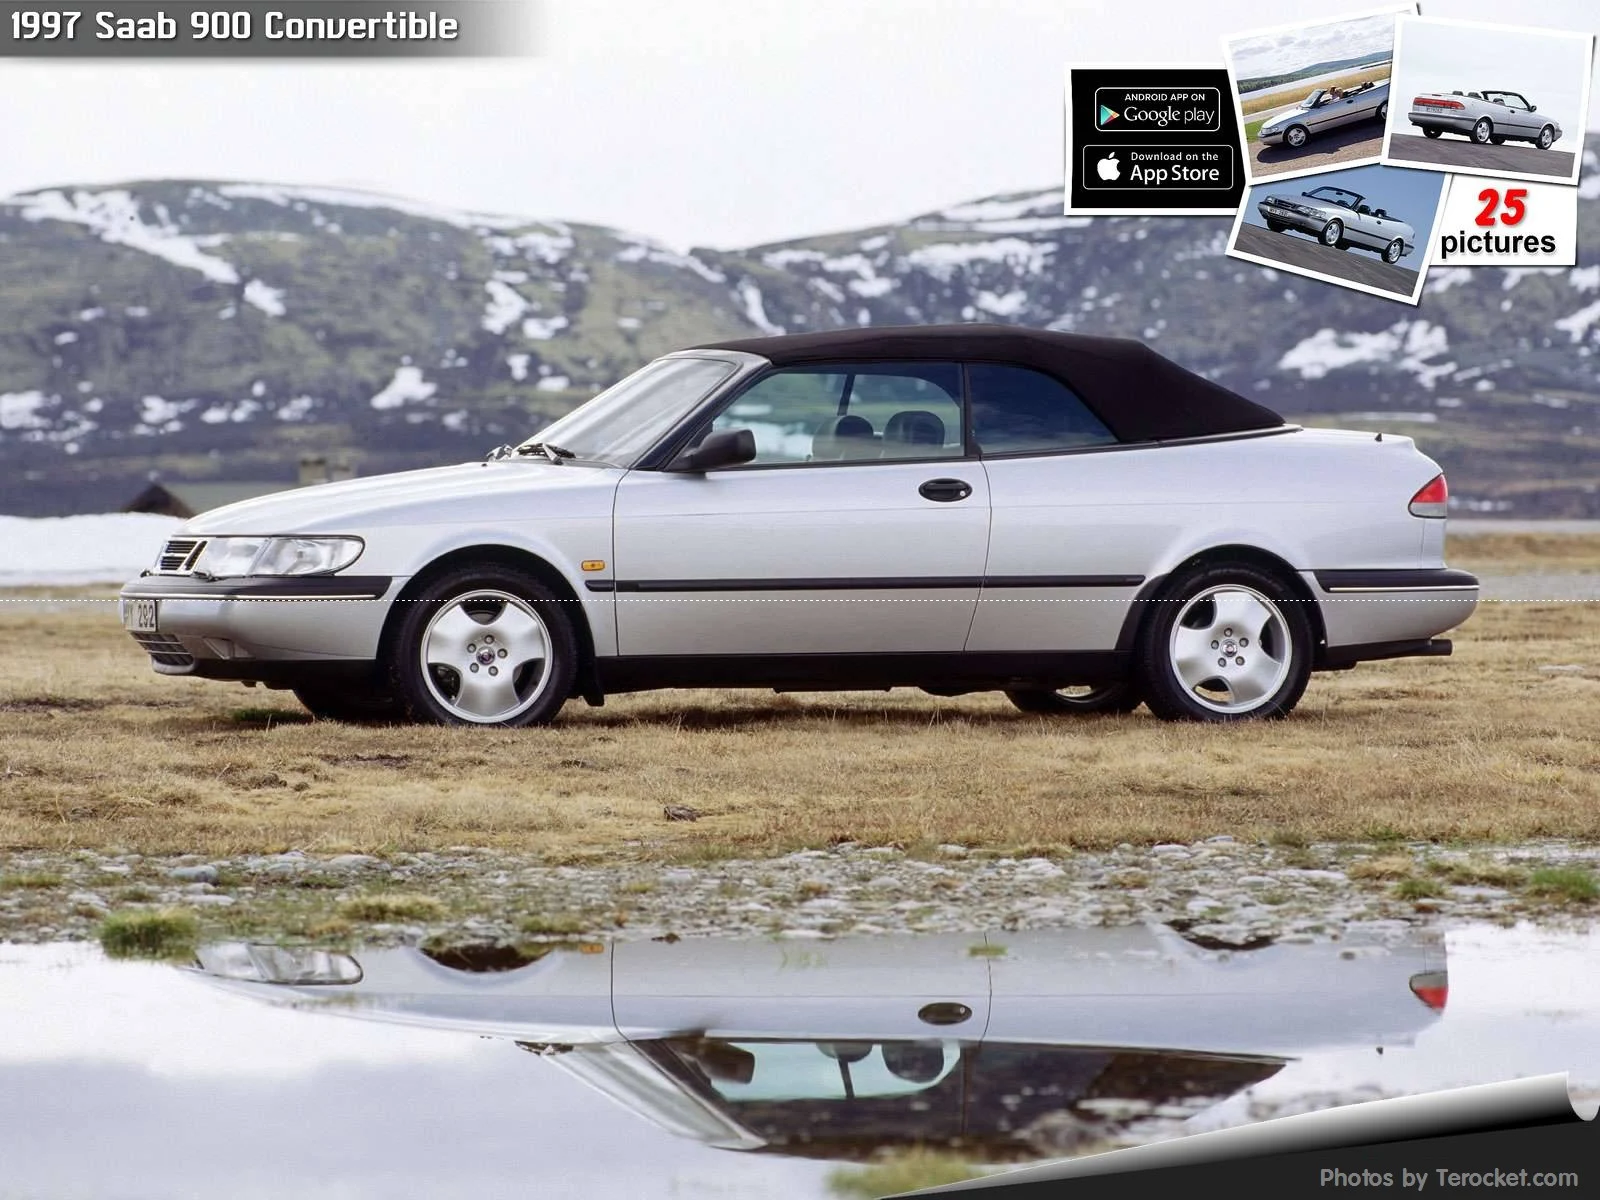 Hình ảnh xe ô tô Saab 900 Convertible 1997 & nội ngoại thất